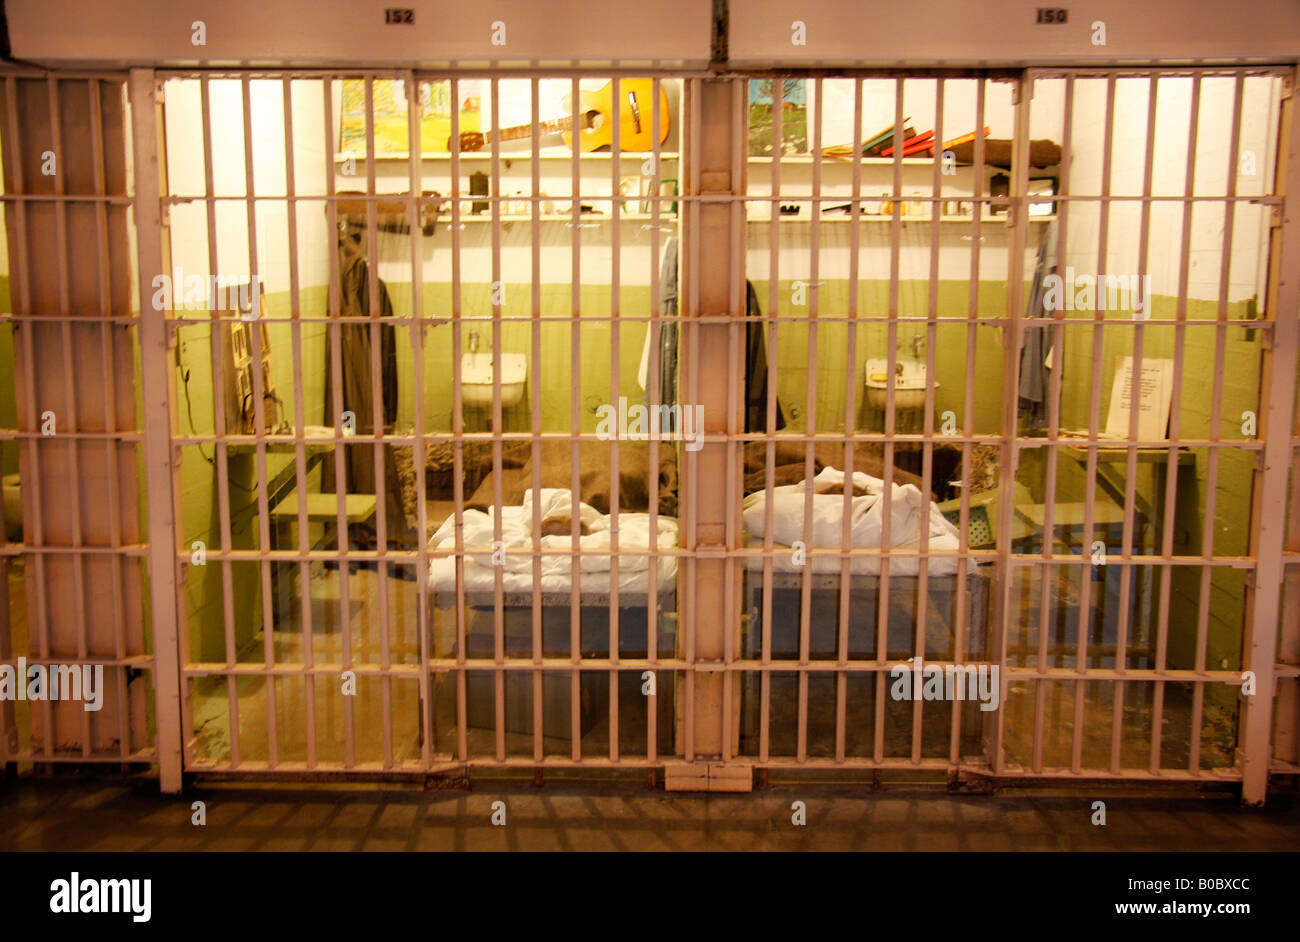 Tableaux storico nella prigione di Alcatraz 'escapee' cellule è un popolare gita parte del tour giornalieri per la famigerata prigione Foto Stock